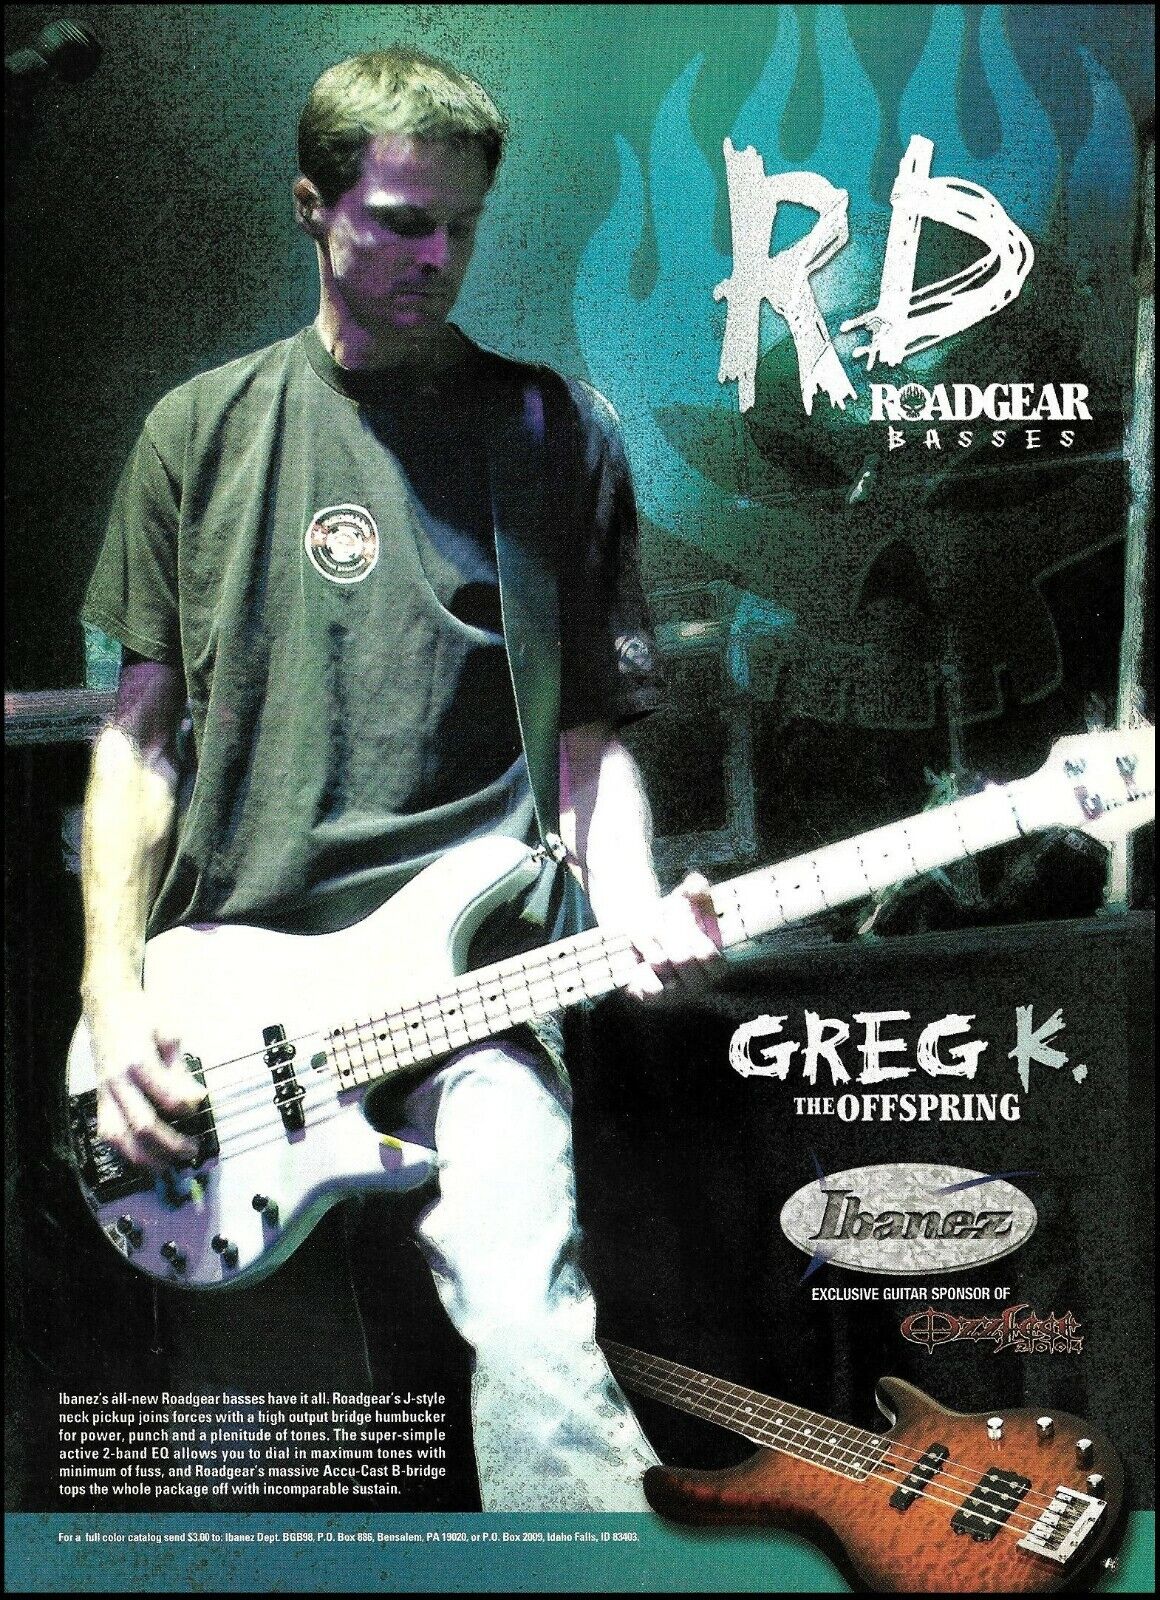 The Offspring Greg K. 2004 Ibanez RD Roadgear Bass guitar advertisement ad print